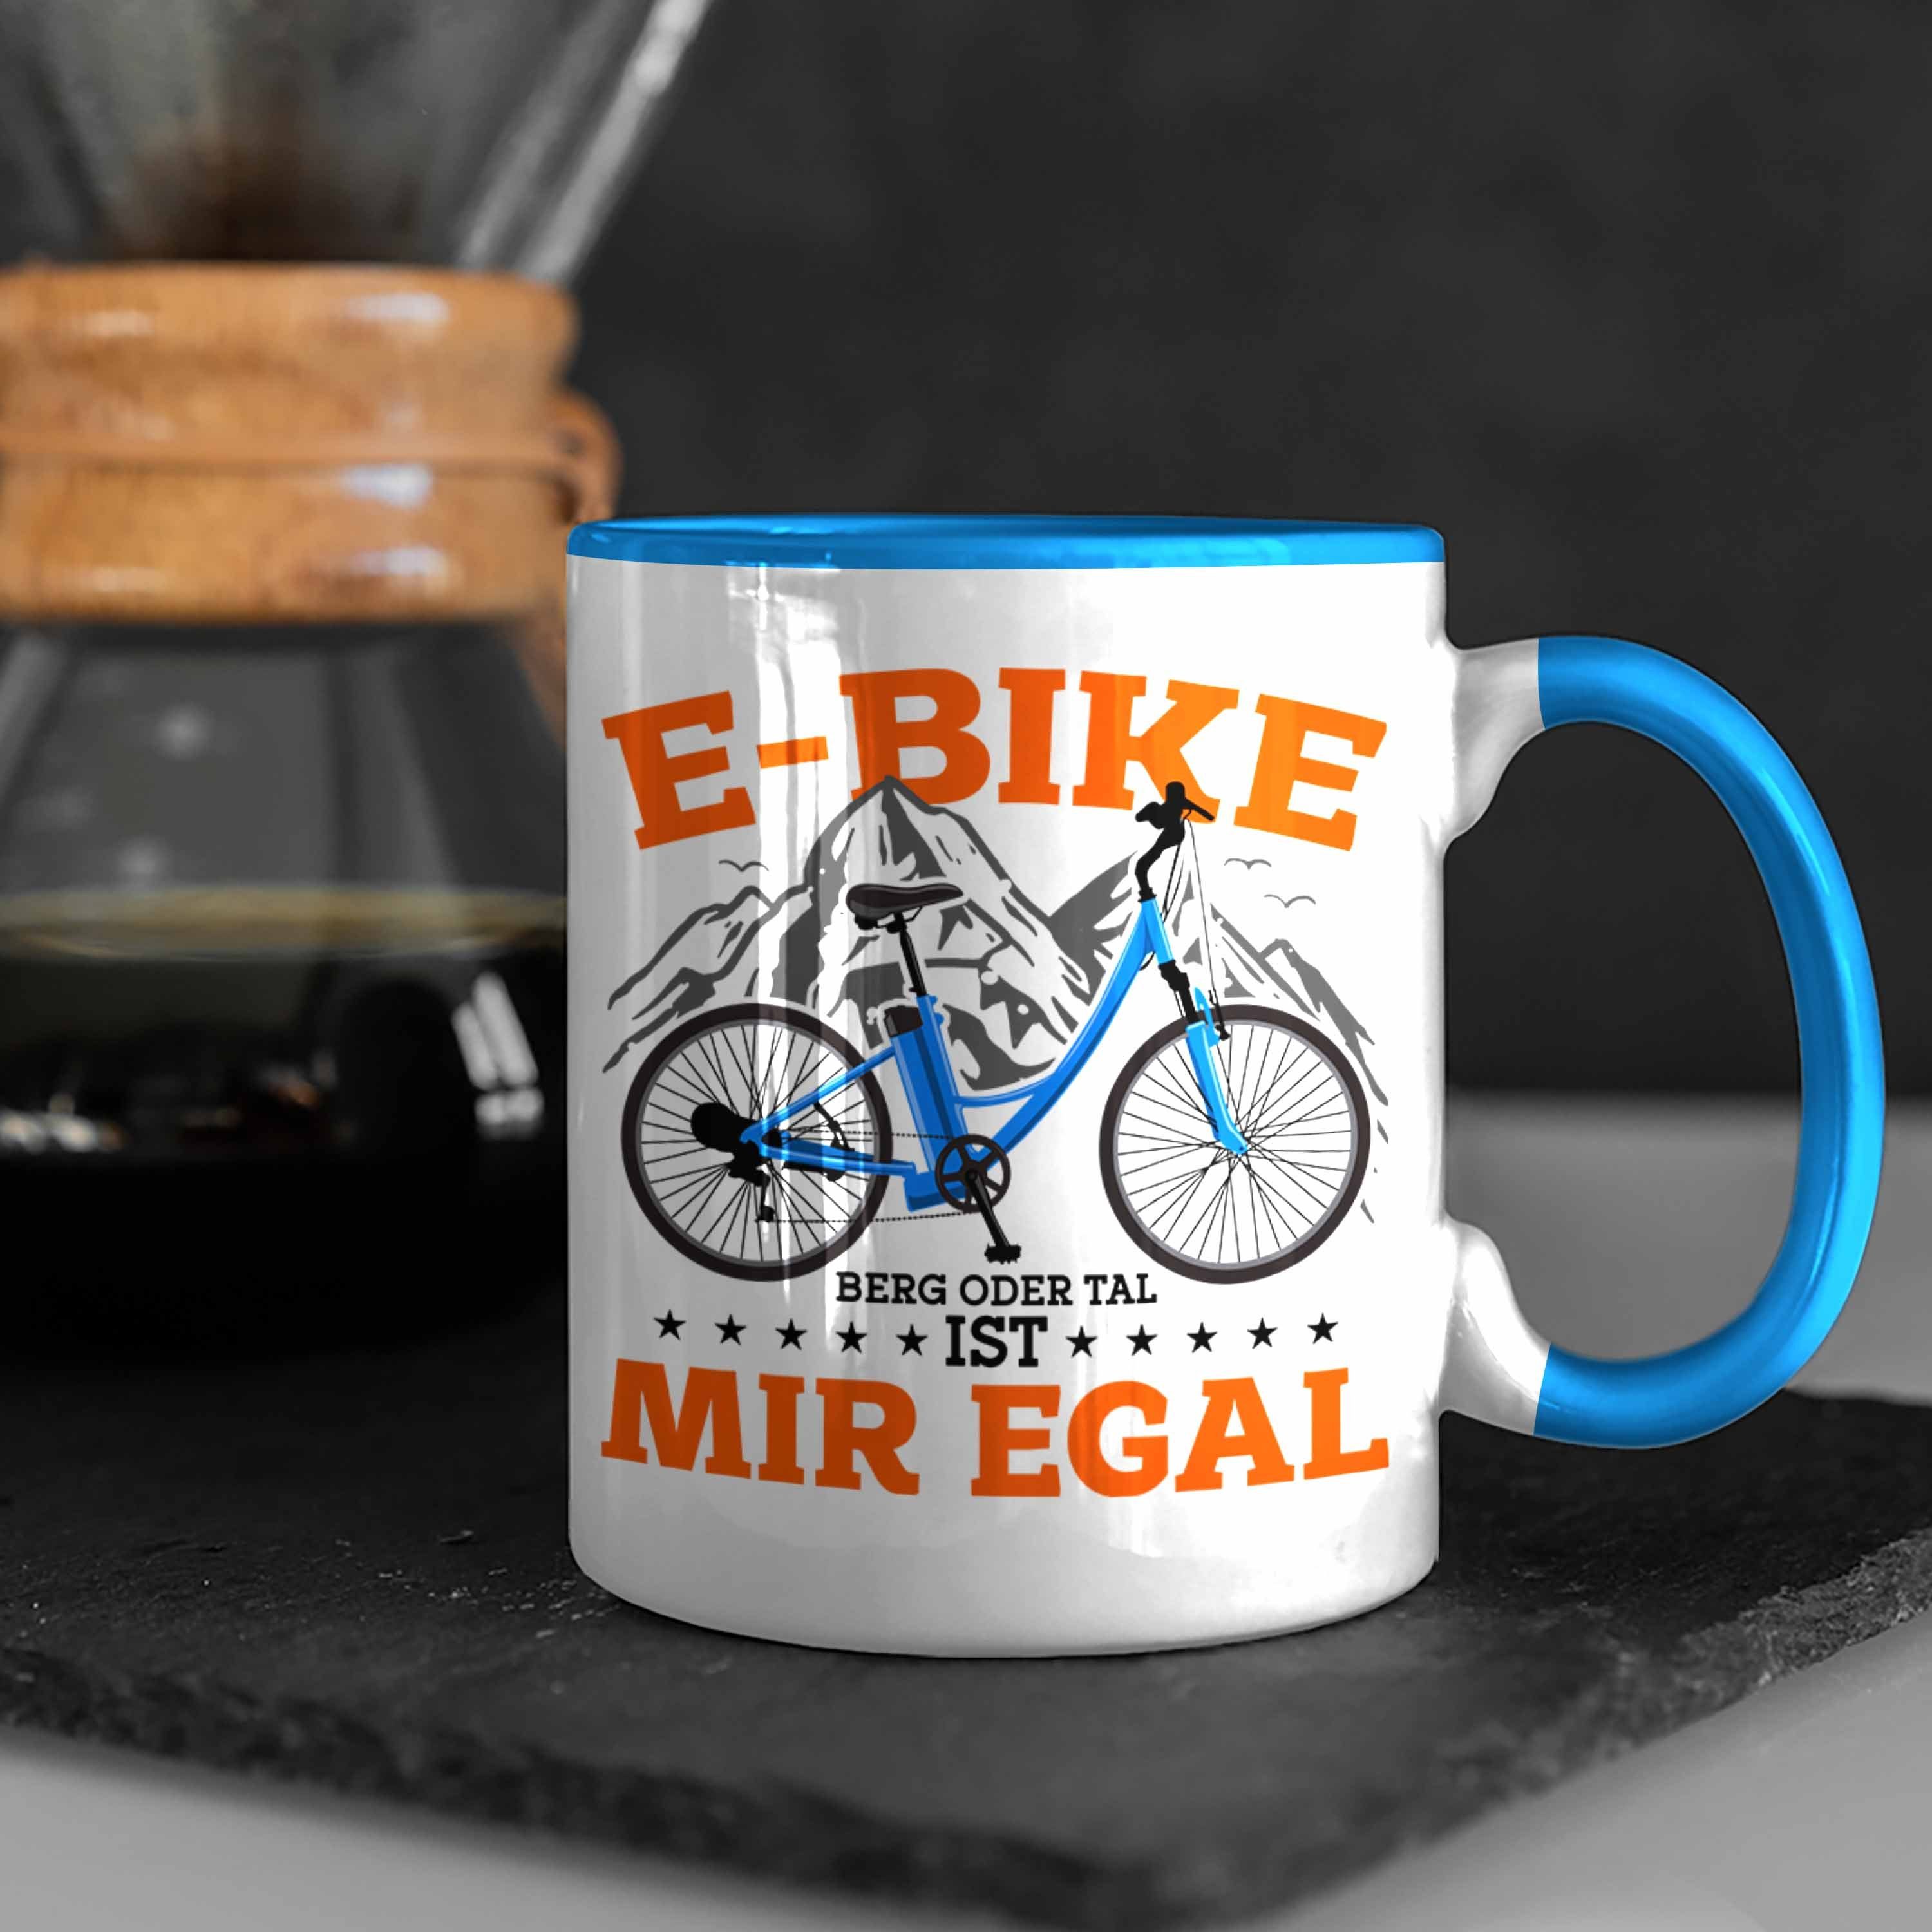 Blau Trendation Tasse Geschenk E-Bike Lustige Fans Tasse E-Bike Sprüche Geschenkidee